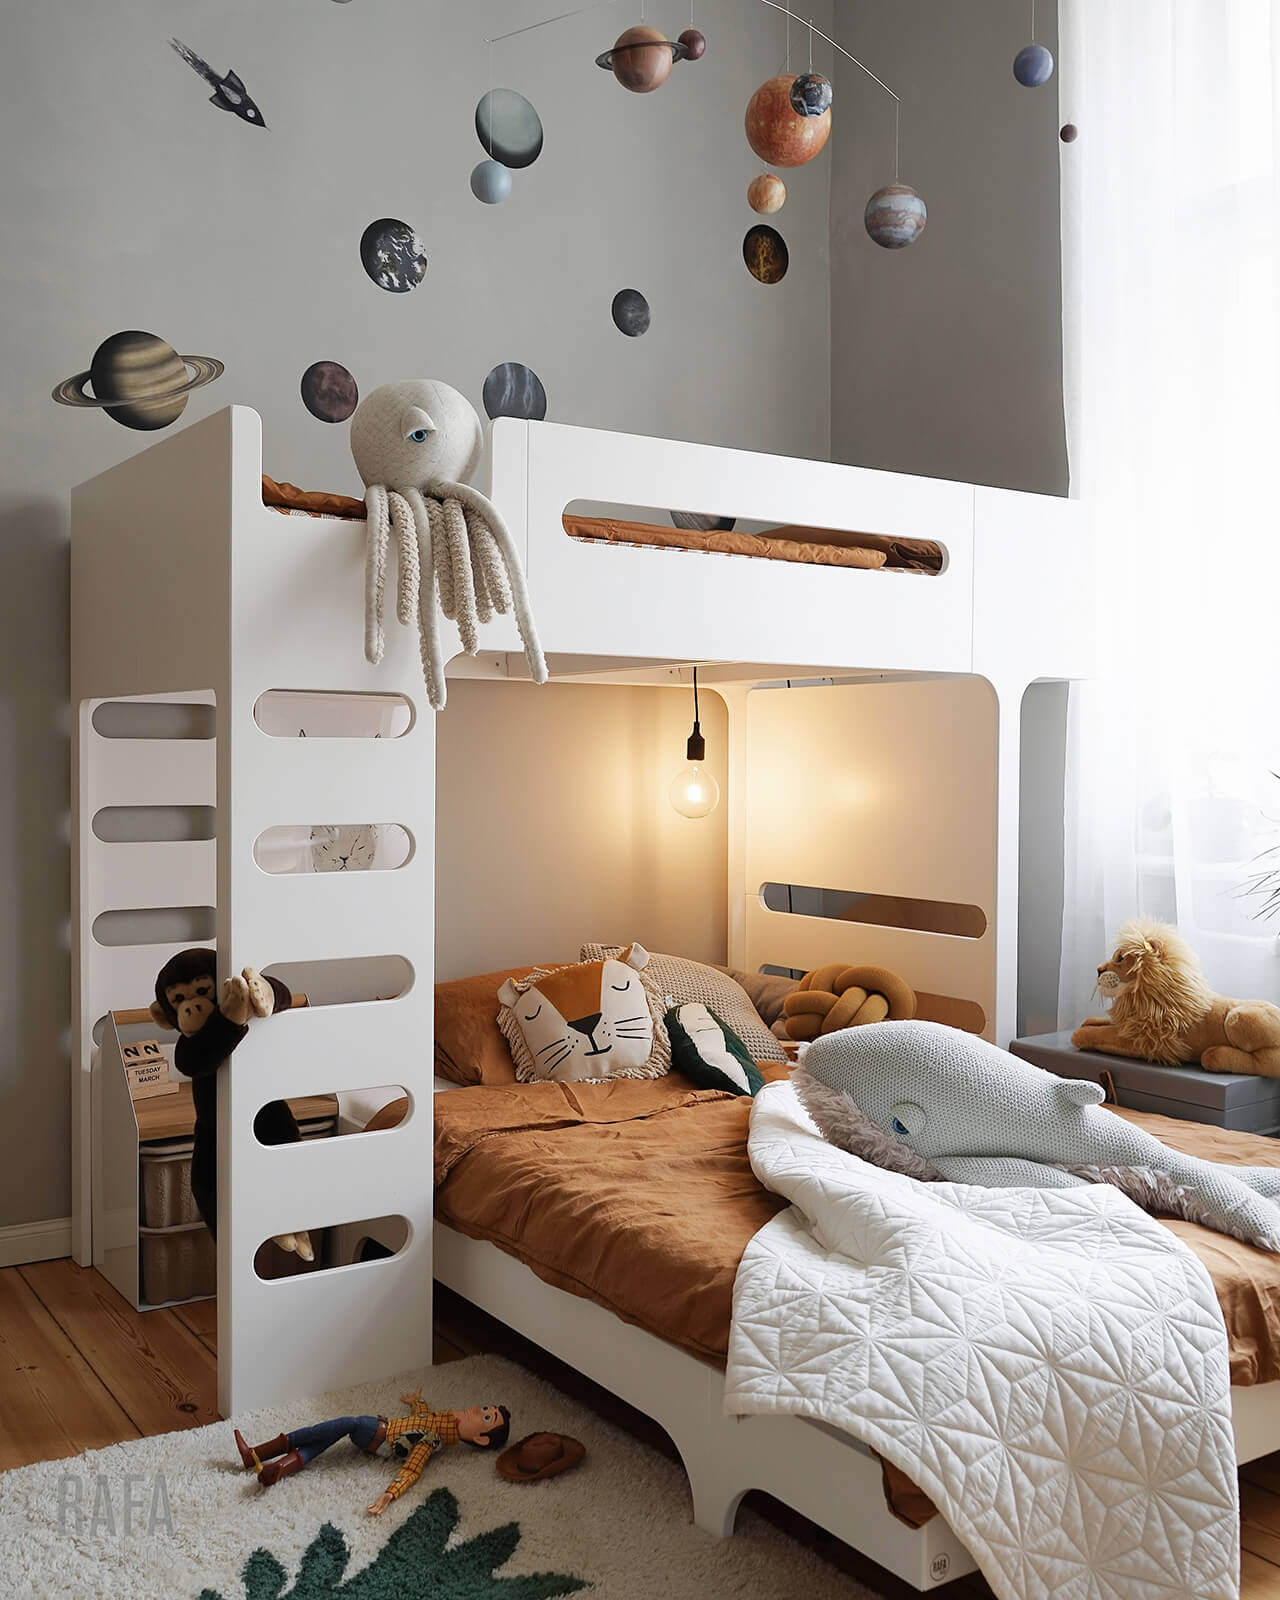 F Bunk Bed Designer Furniture For, Loft Bunk Bed Sets